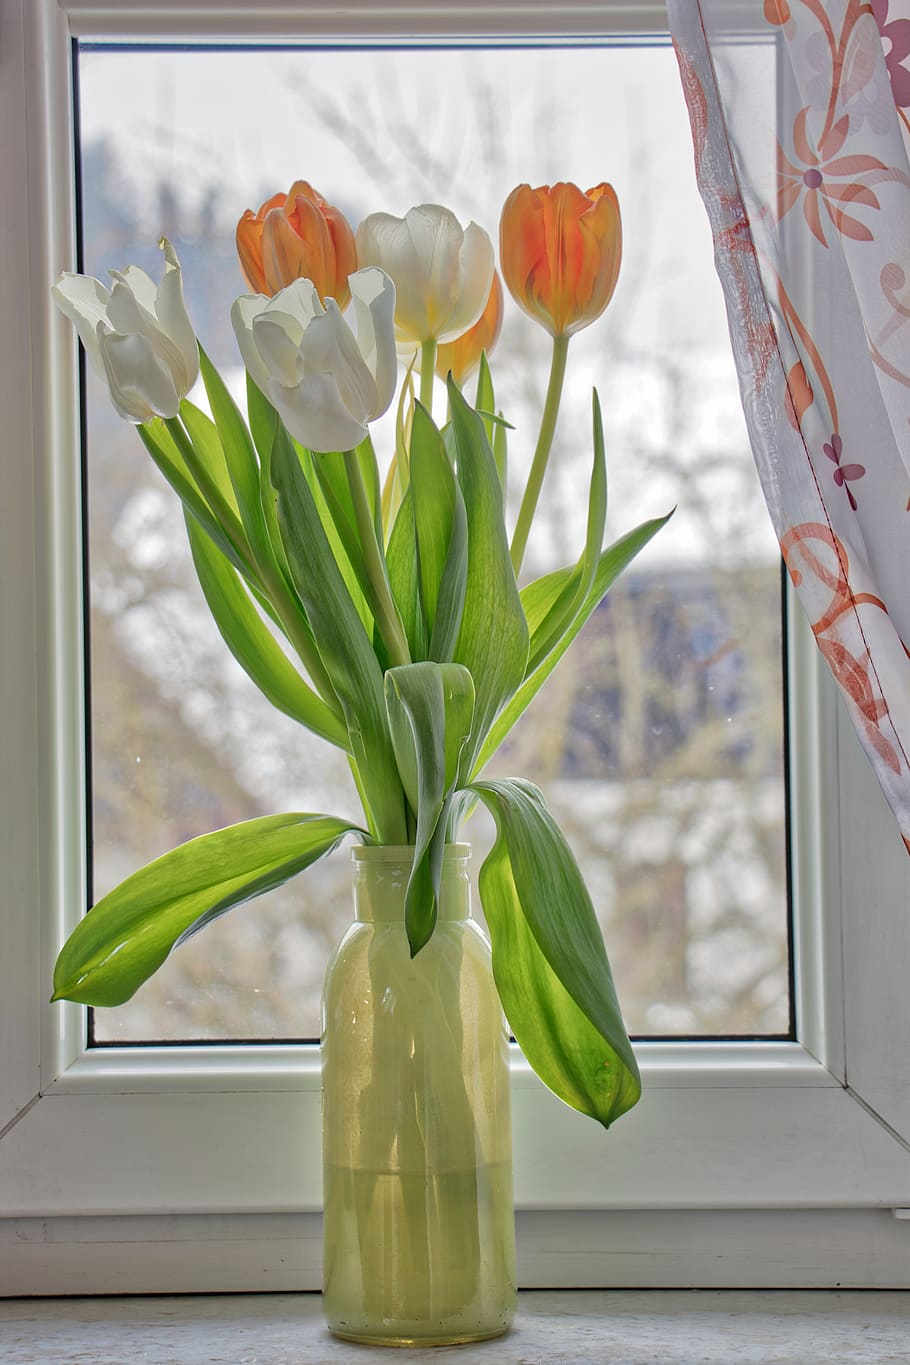 С добрым утром и днем мартовские новые. Открытки с добрым утром весенние. Тюльпаны на окне. Доброго весенненнго дня.